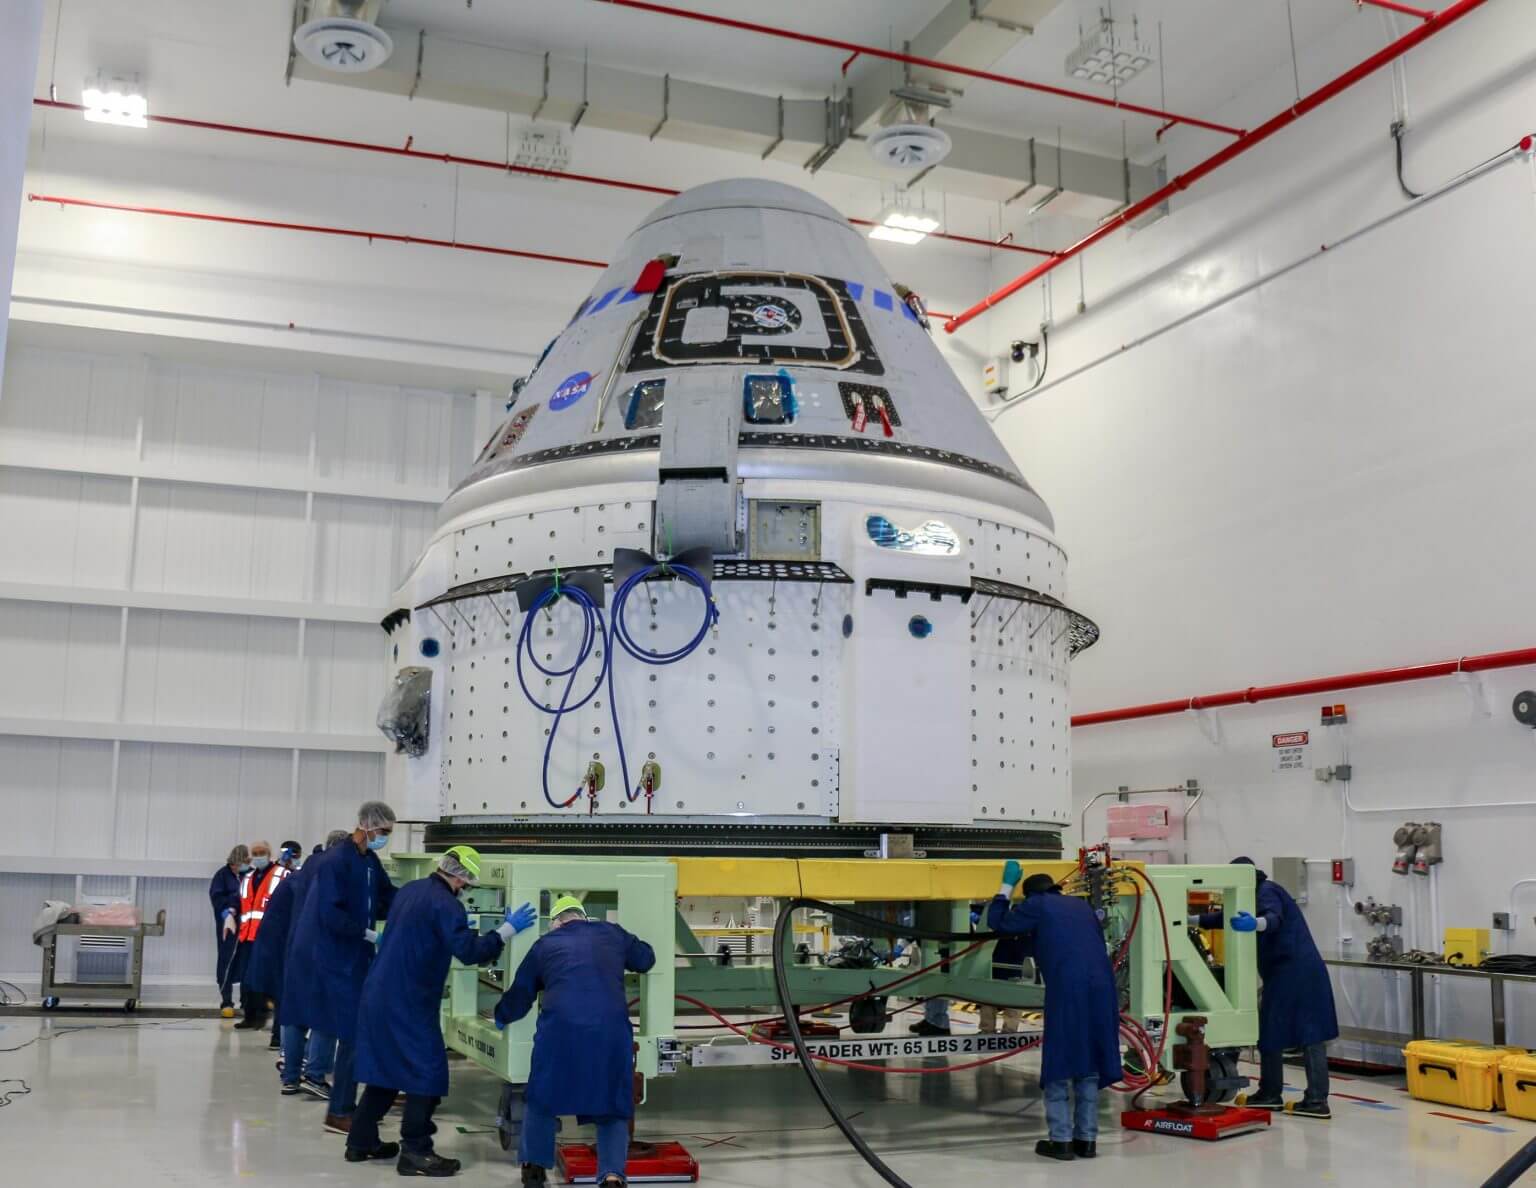 חללית בואינג CST-100 סטארלינר שתוטס במבחן טיסה מסלולית -2 (OFT-2) נראית במתקן הצוות המסחרי ועיבוד המטען במרכז החלל קנדי של נאס"א בפלורידה ב-2 ביוני. קרדיט: בואינג